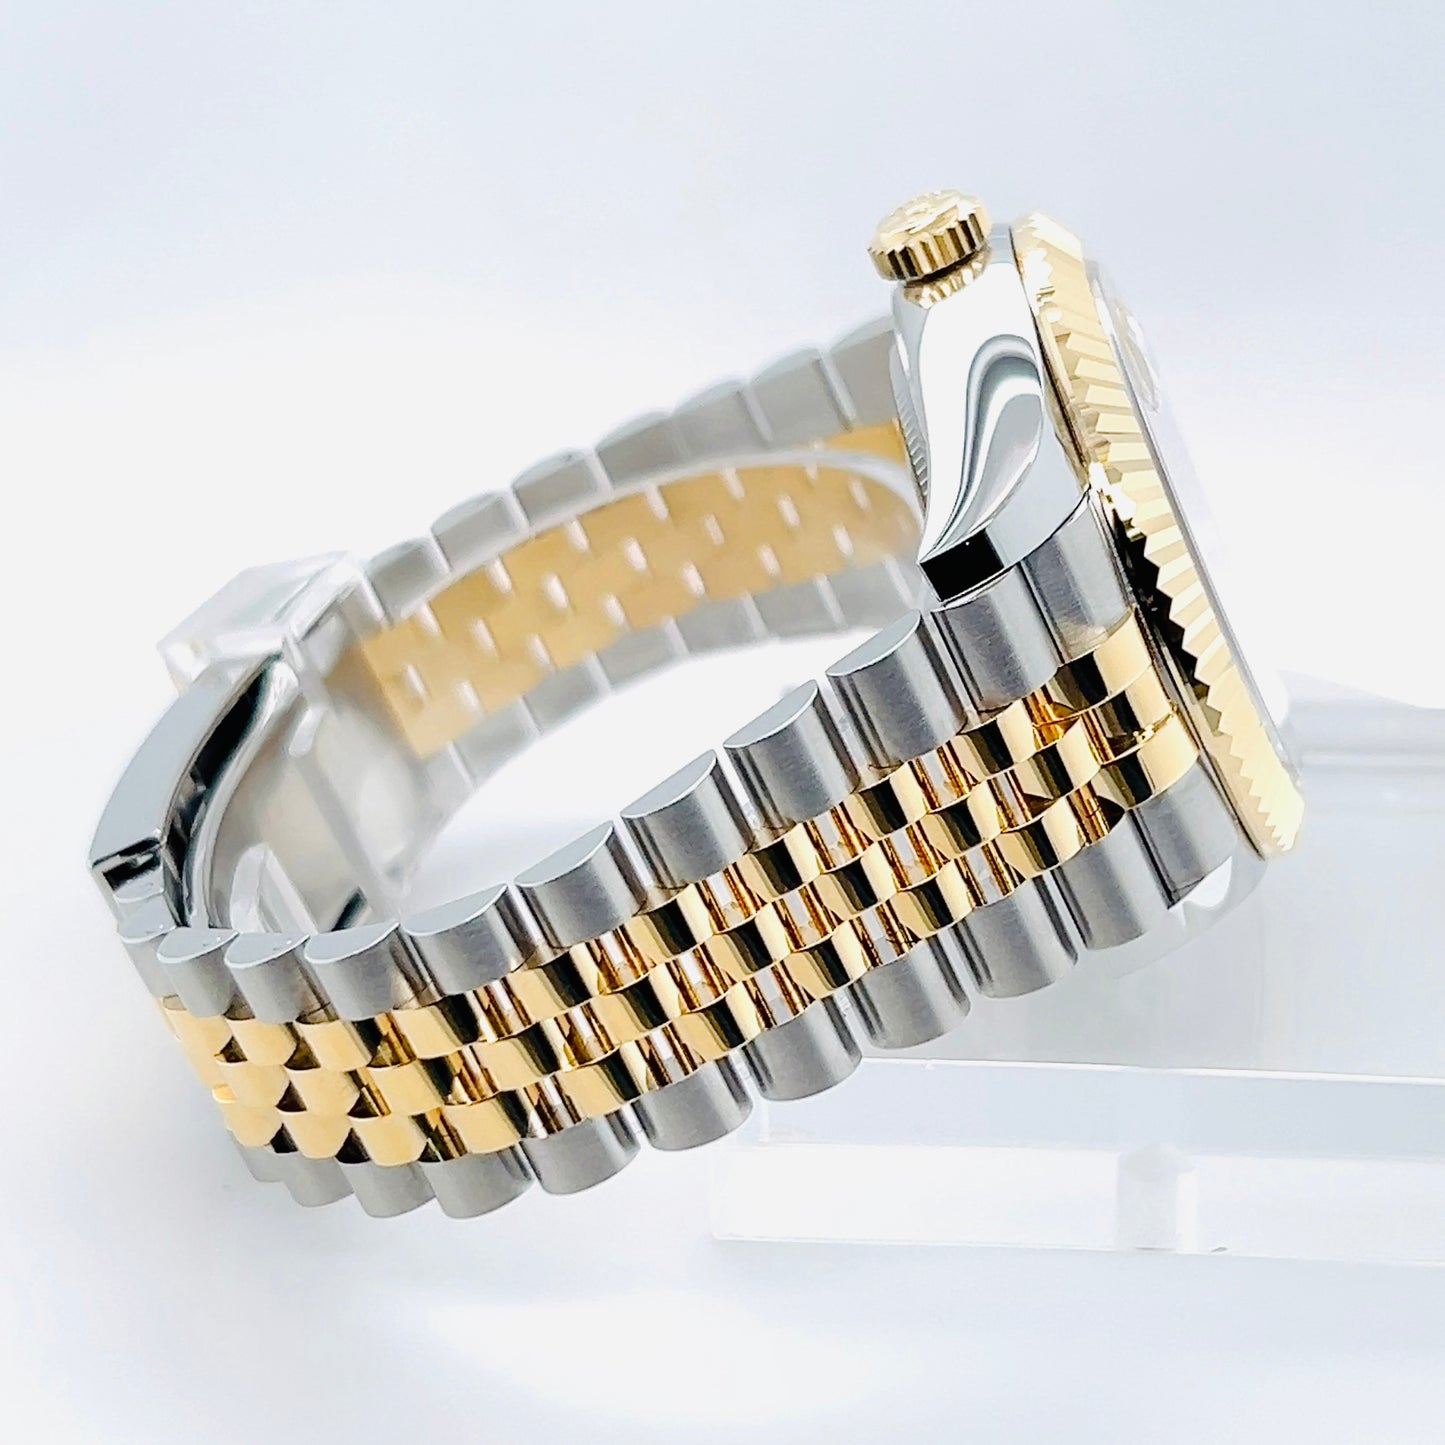 Rolex Sky-Dweller 42mm Champagne Dial Men's Watch Model #336933